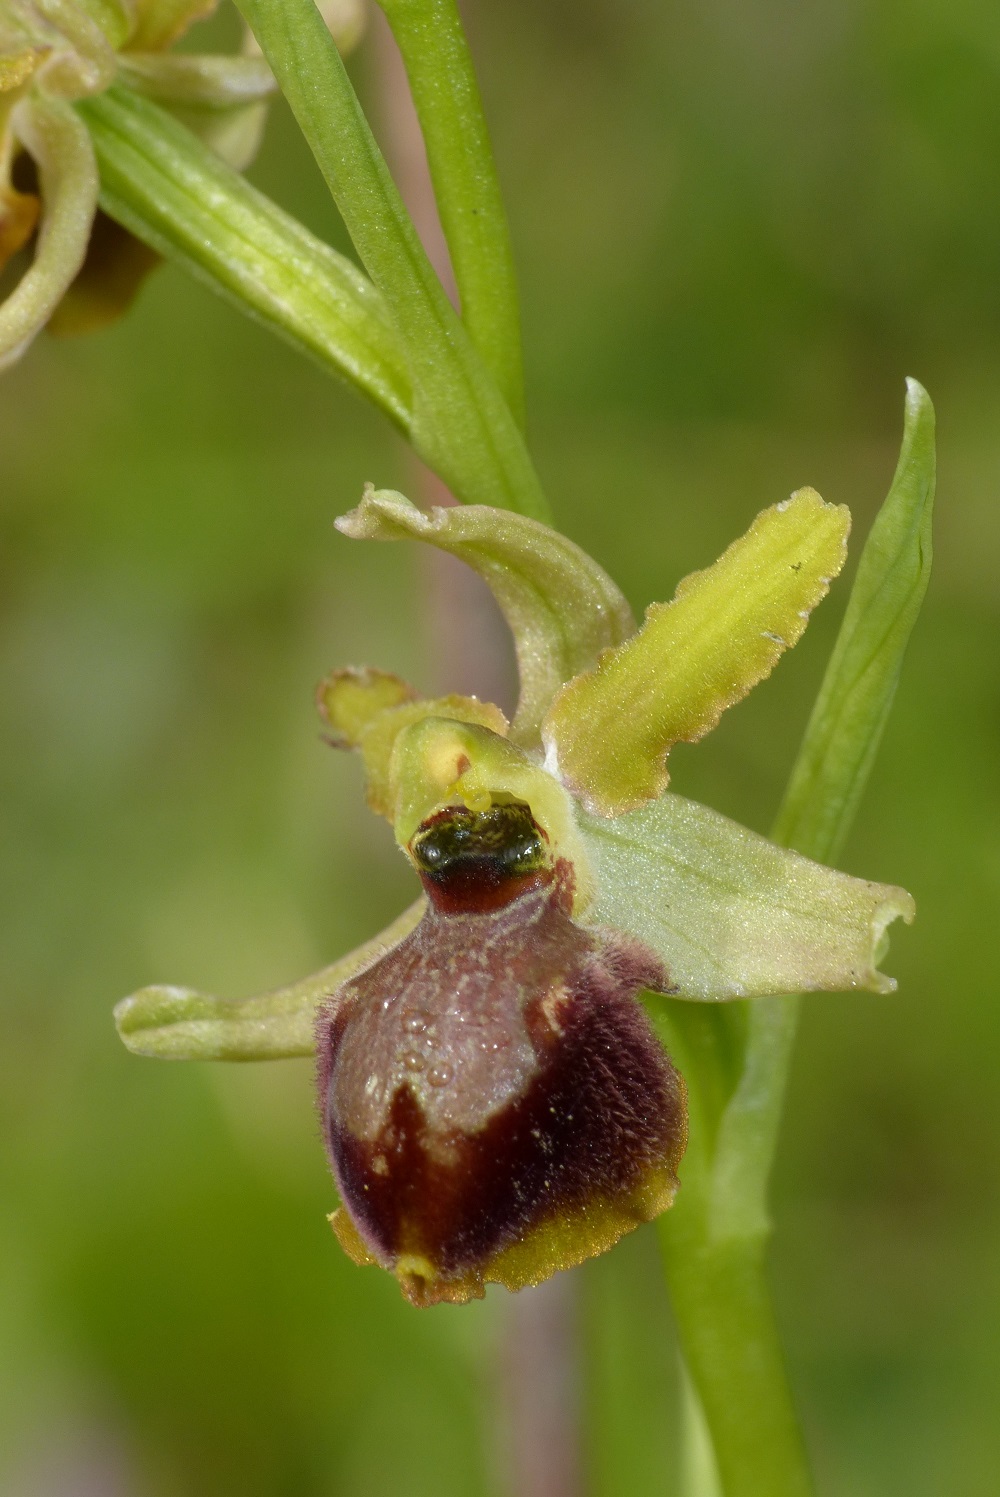 Le orchidee spontanee nel Giardino di Boboli: patrimonio naturale da tutelare e valorizzare.